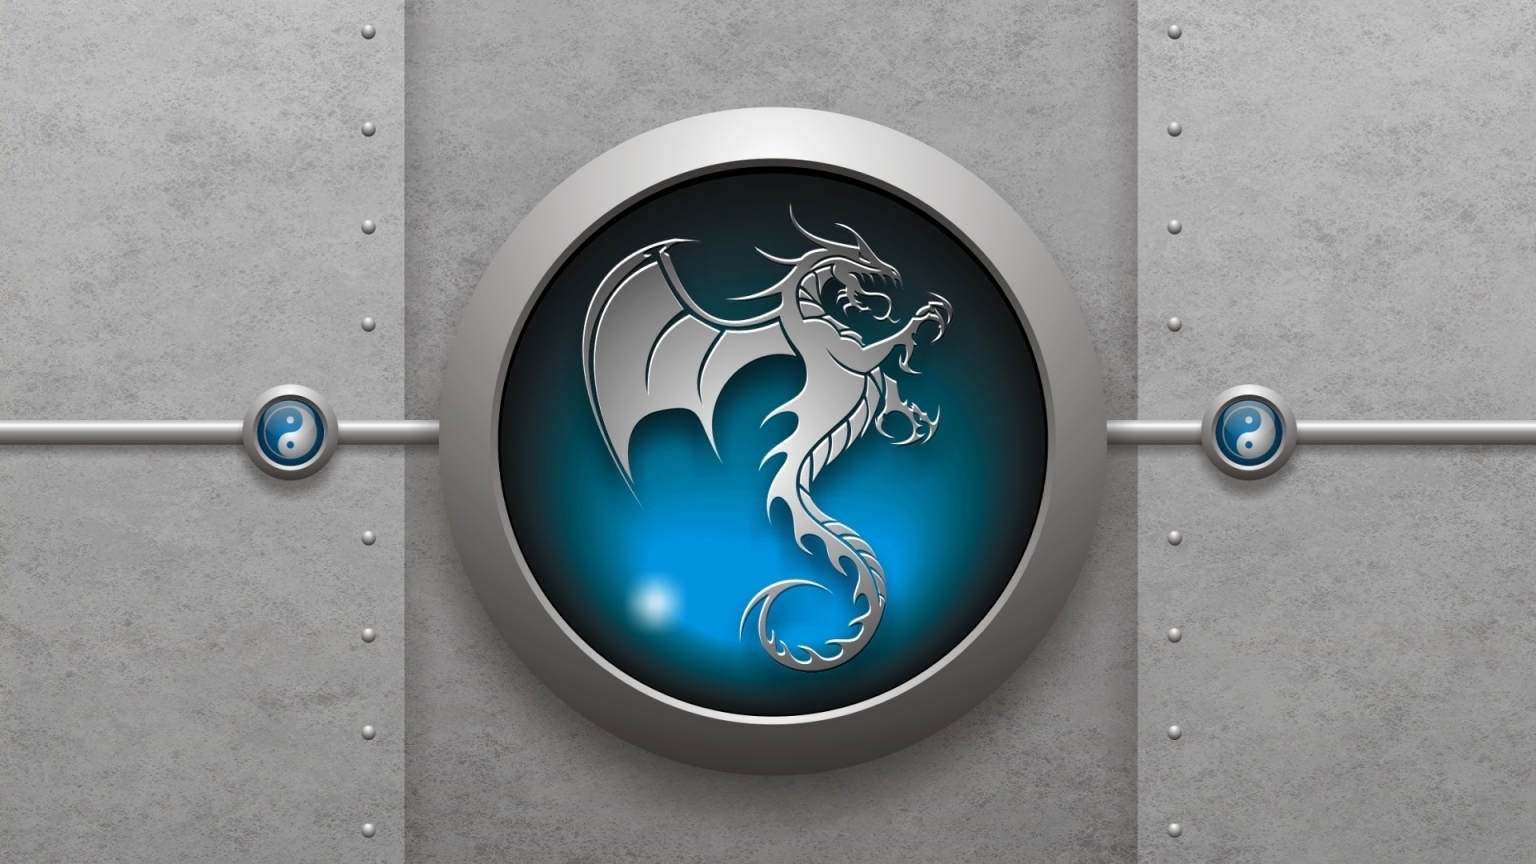 Logo Dragon 3D for 1536 x 864 HDTV resolution